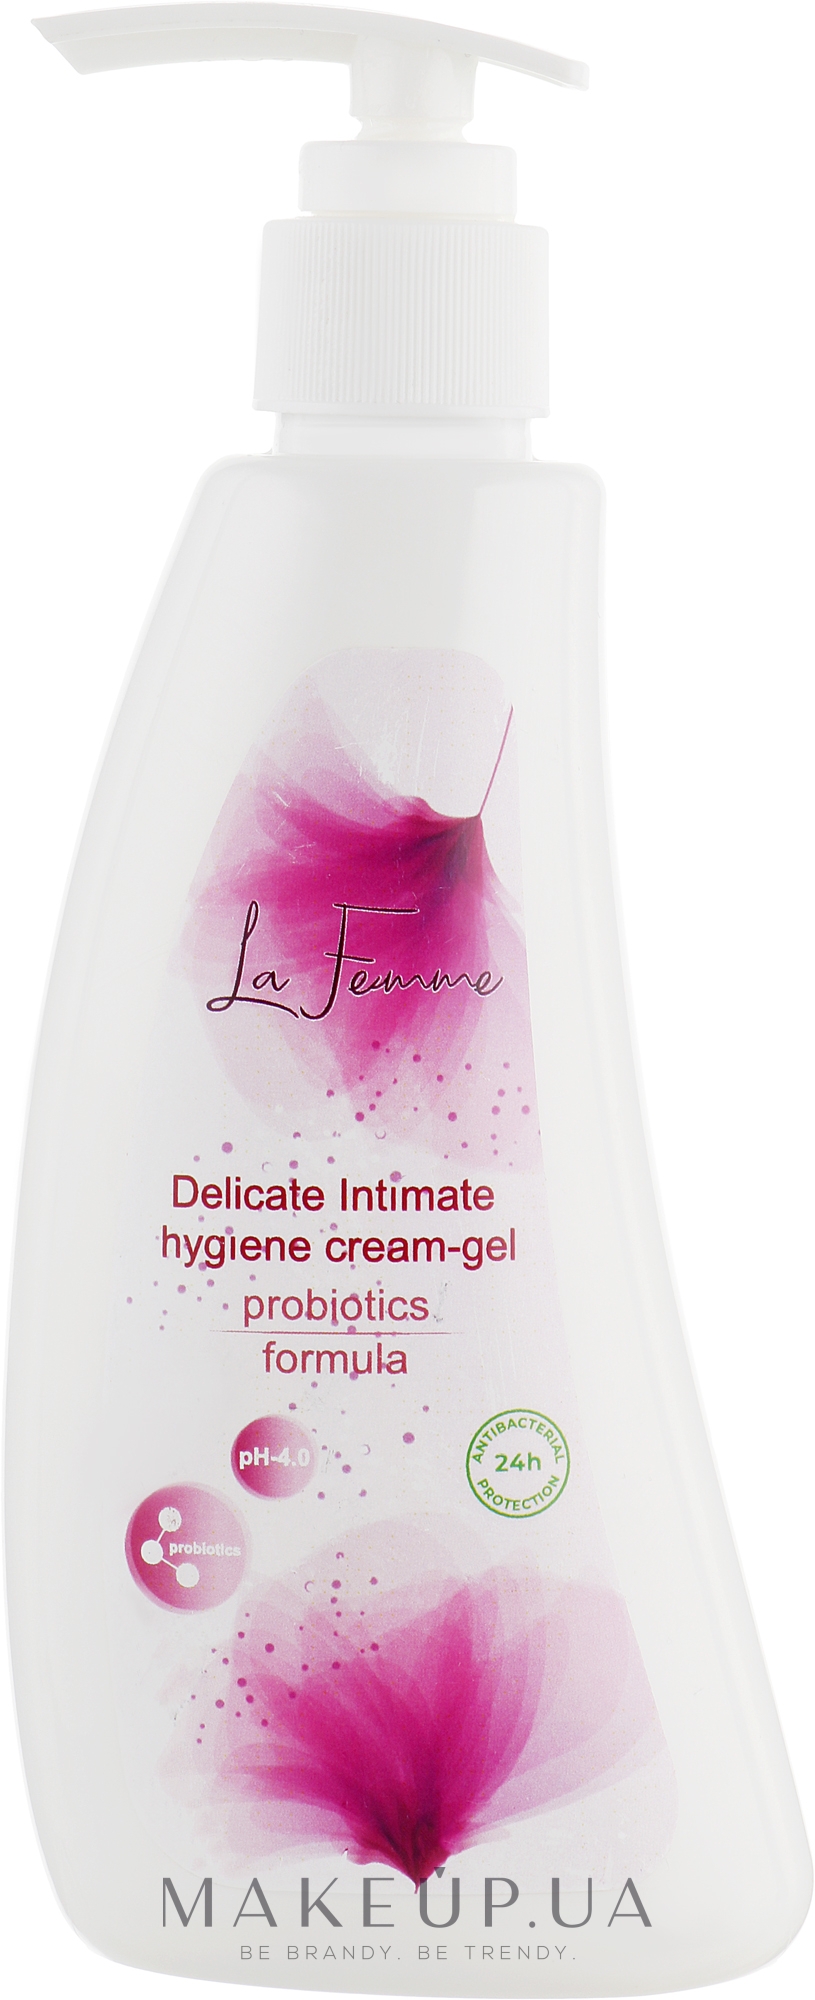 Делікатний крем-гель для інтимної гігієни з пробіотиками - J'erelia LaFemme Delicate Intimate Hygiene Cream-gel Probiotics Formula — фото 250ml